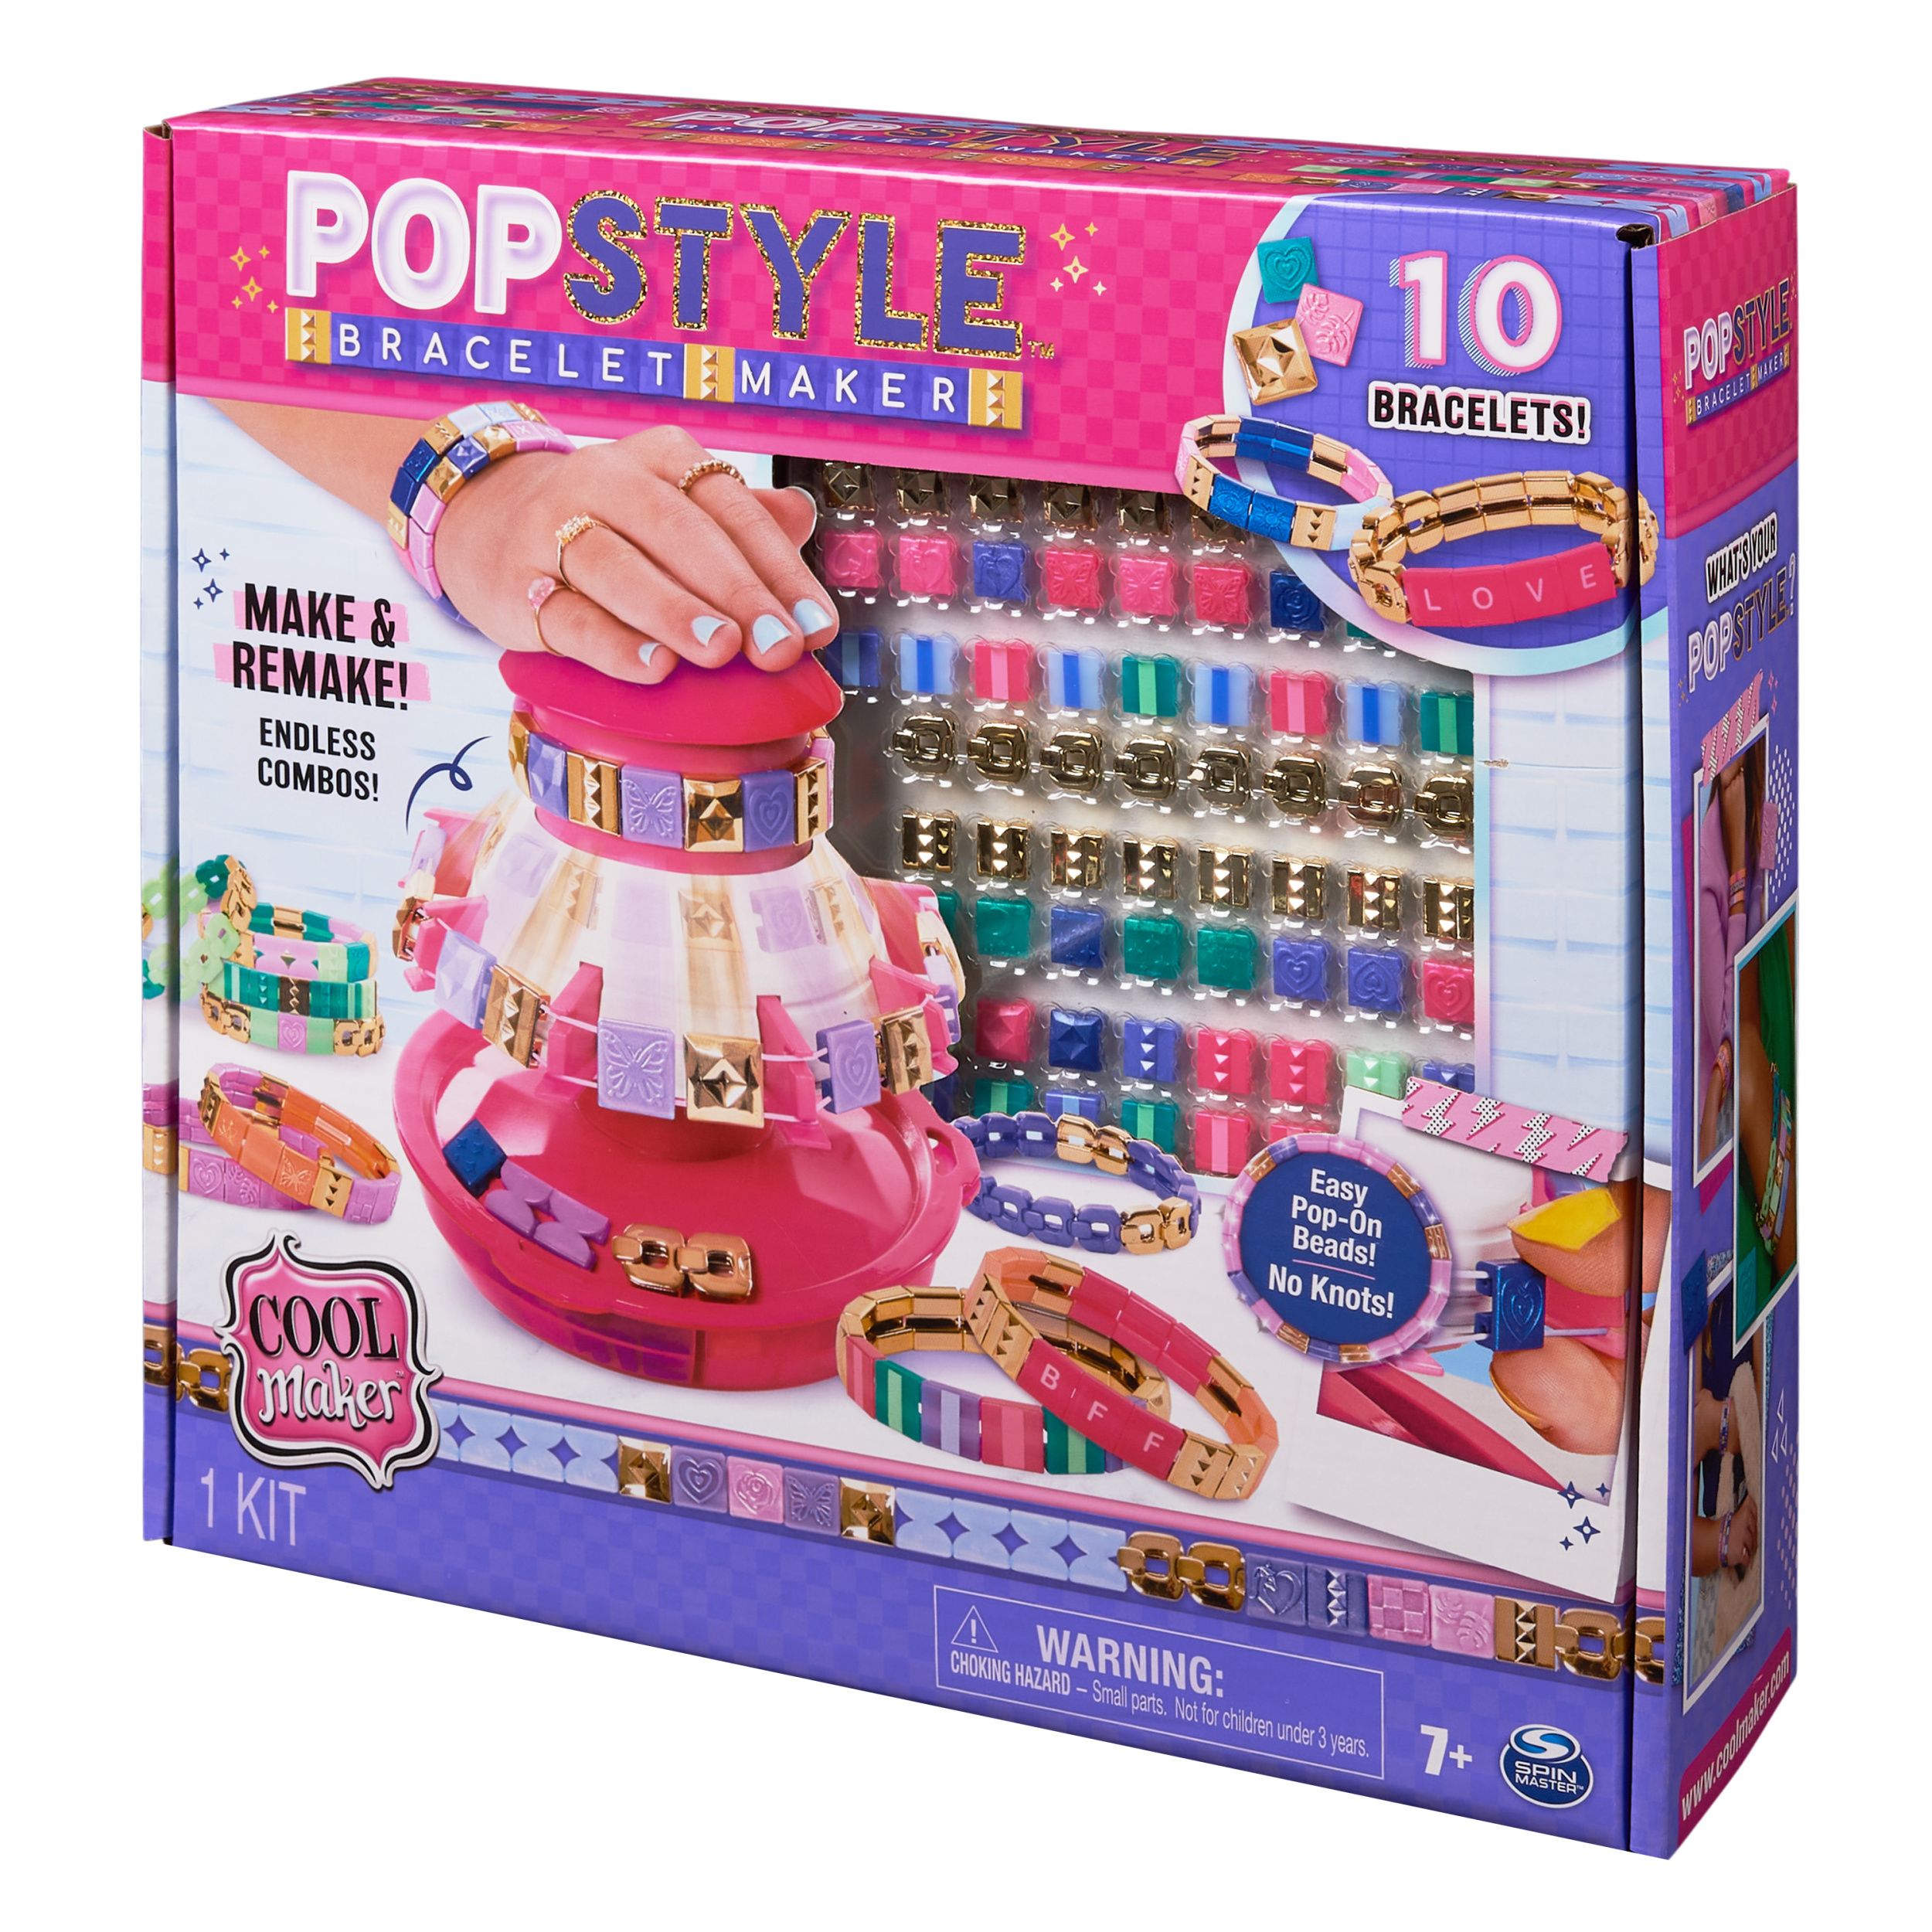 Popstyle Bracelet Maker - Cool Maker →